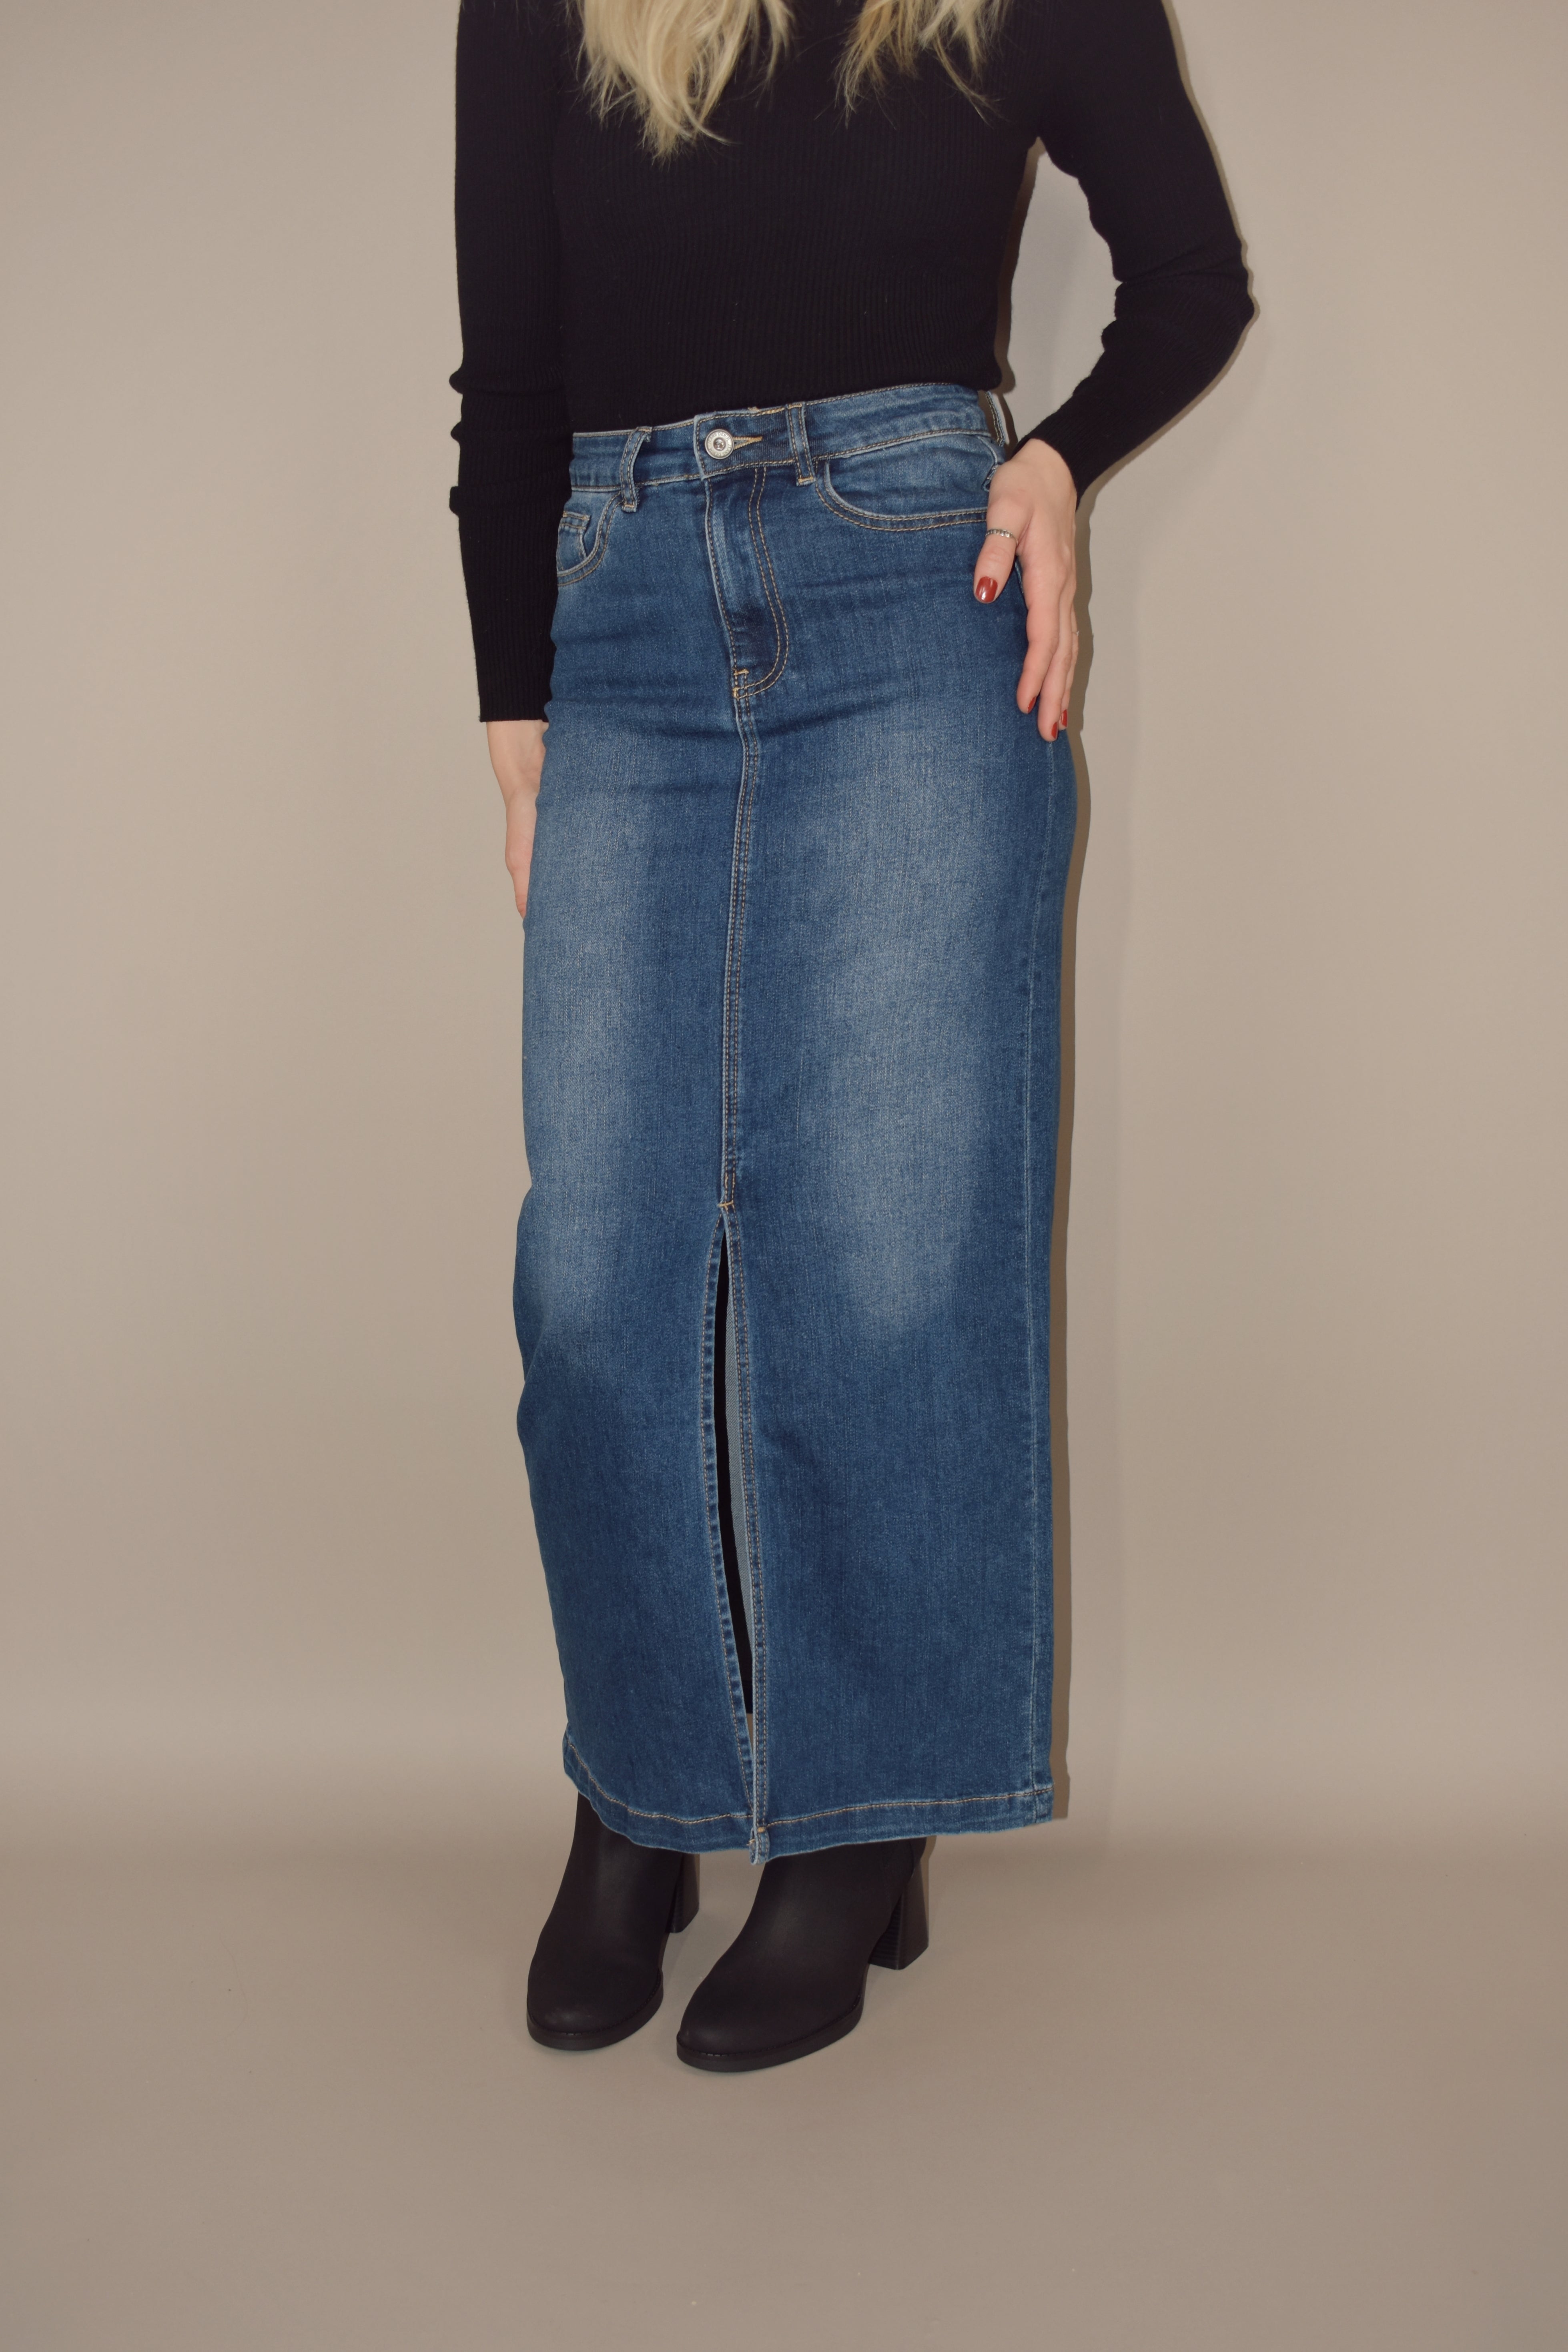 Denim Maxi Skirt/plus Size Skirt/long Blue Jean Skirt/stretch | Etsy | Denim  skirt women, Long blue jean skirts, Blue jean skirt